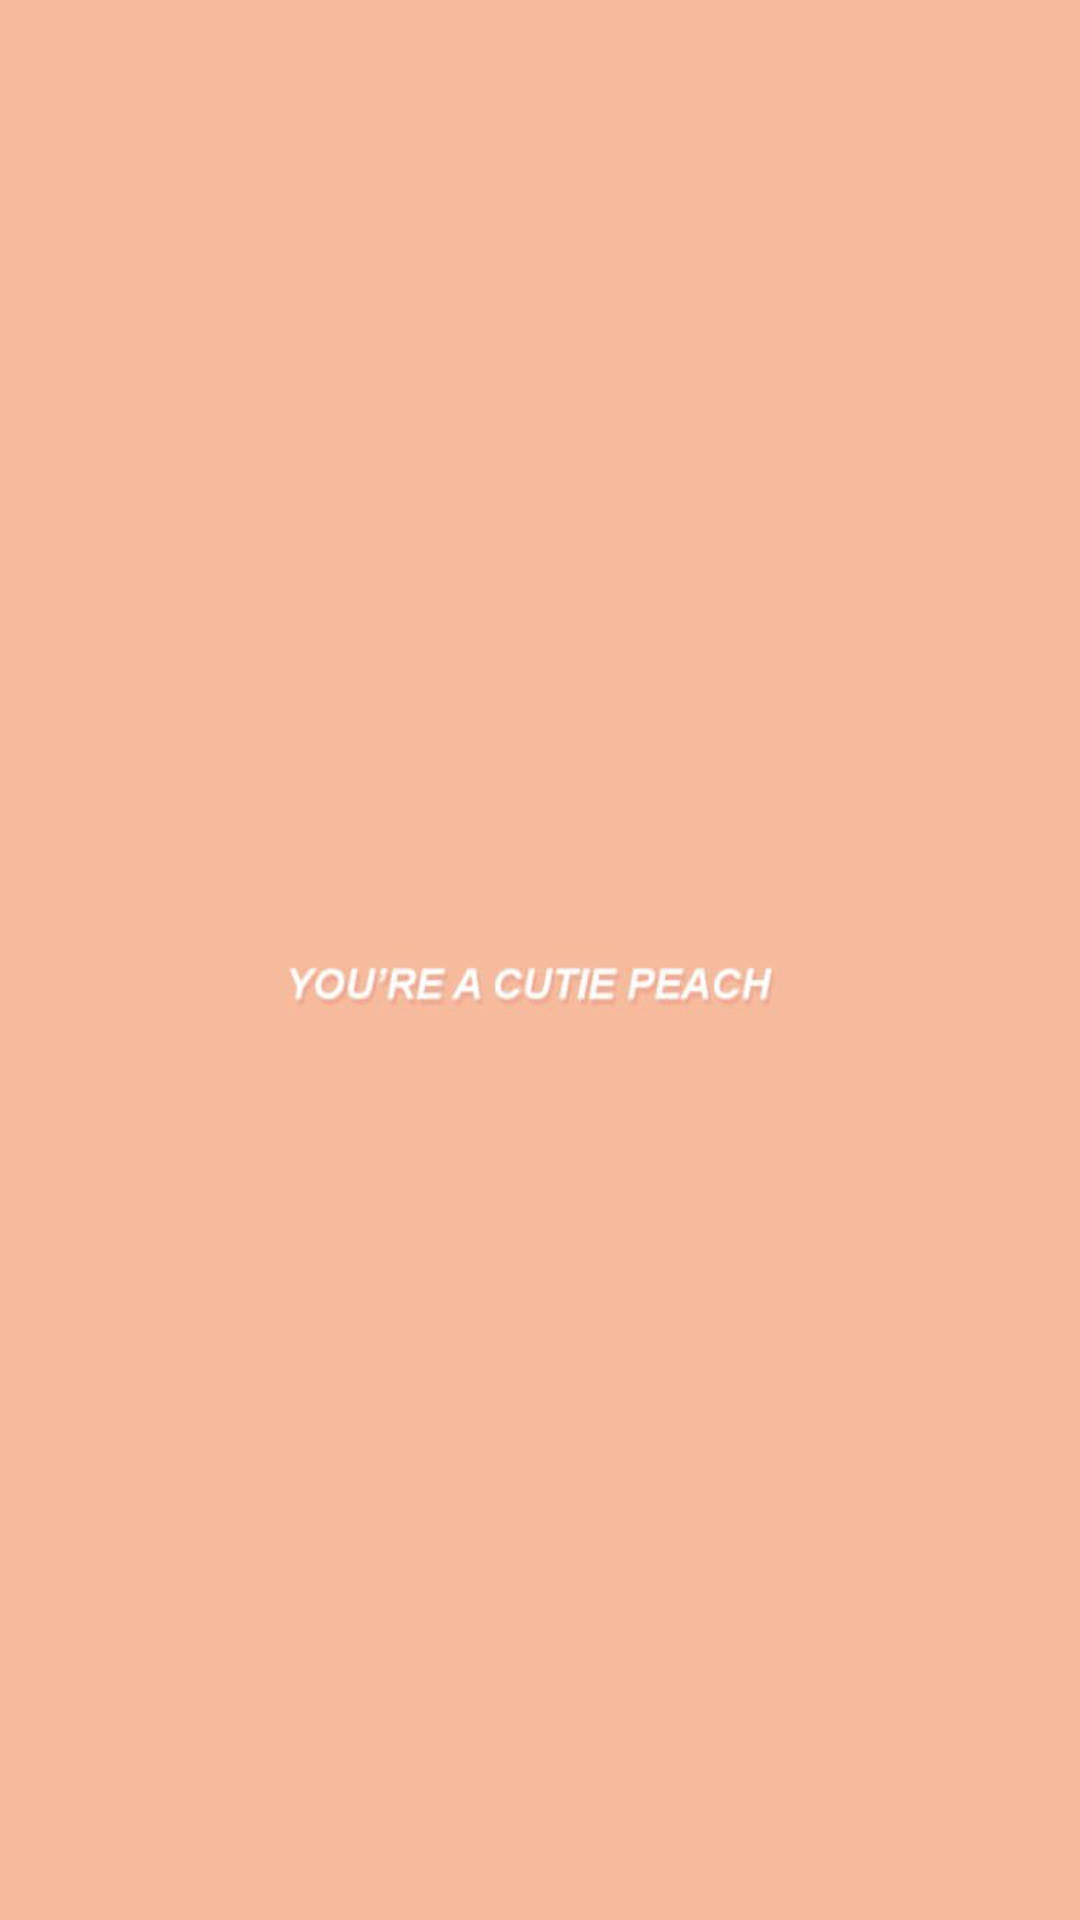 Udtryk en fersk peachy æstetik med denne sjove citatvæg. Wallpaper